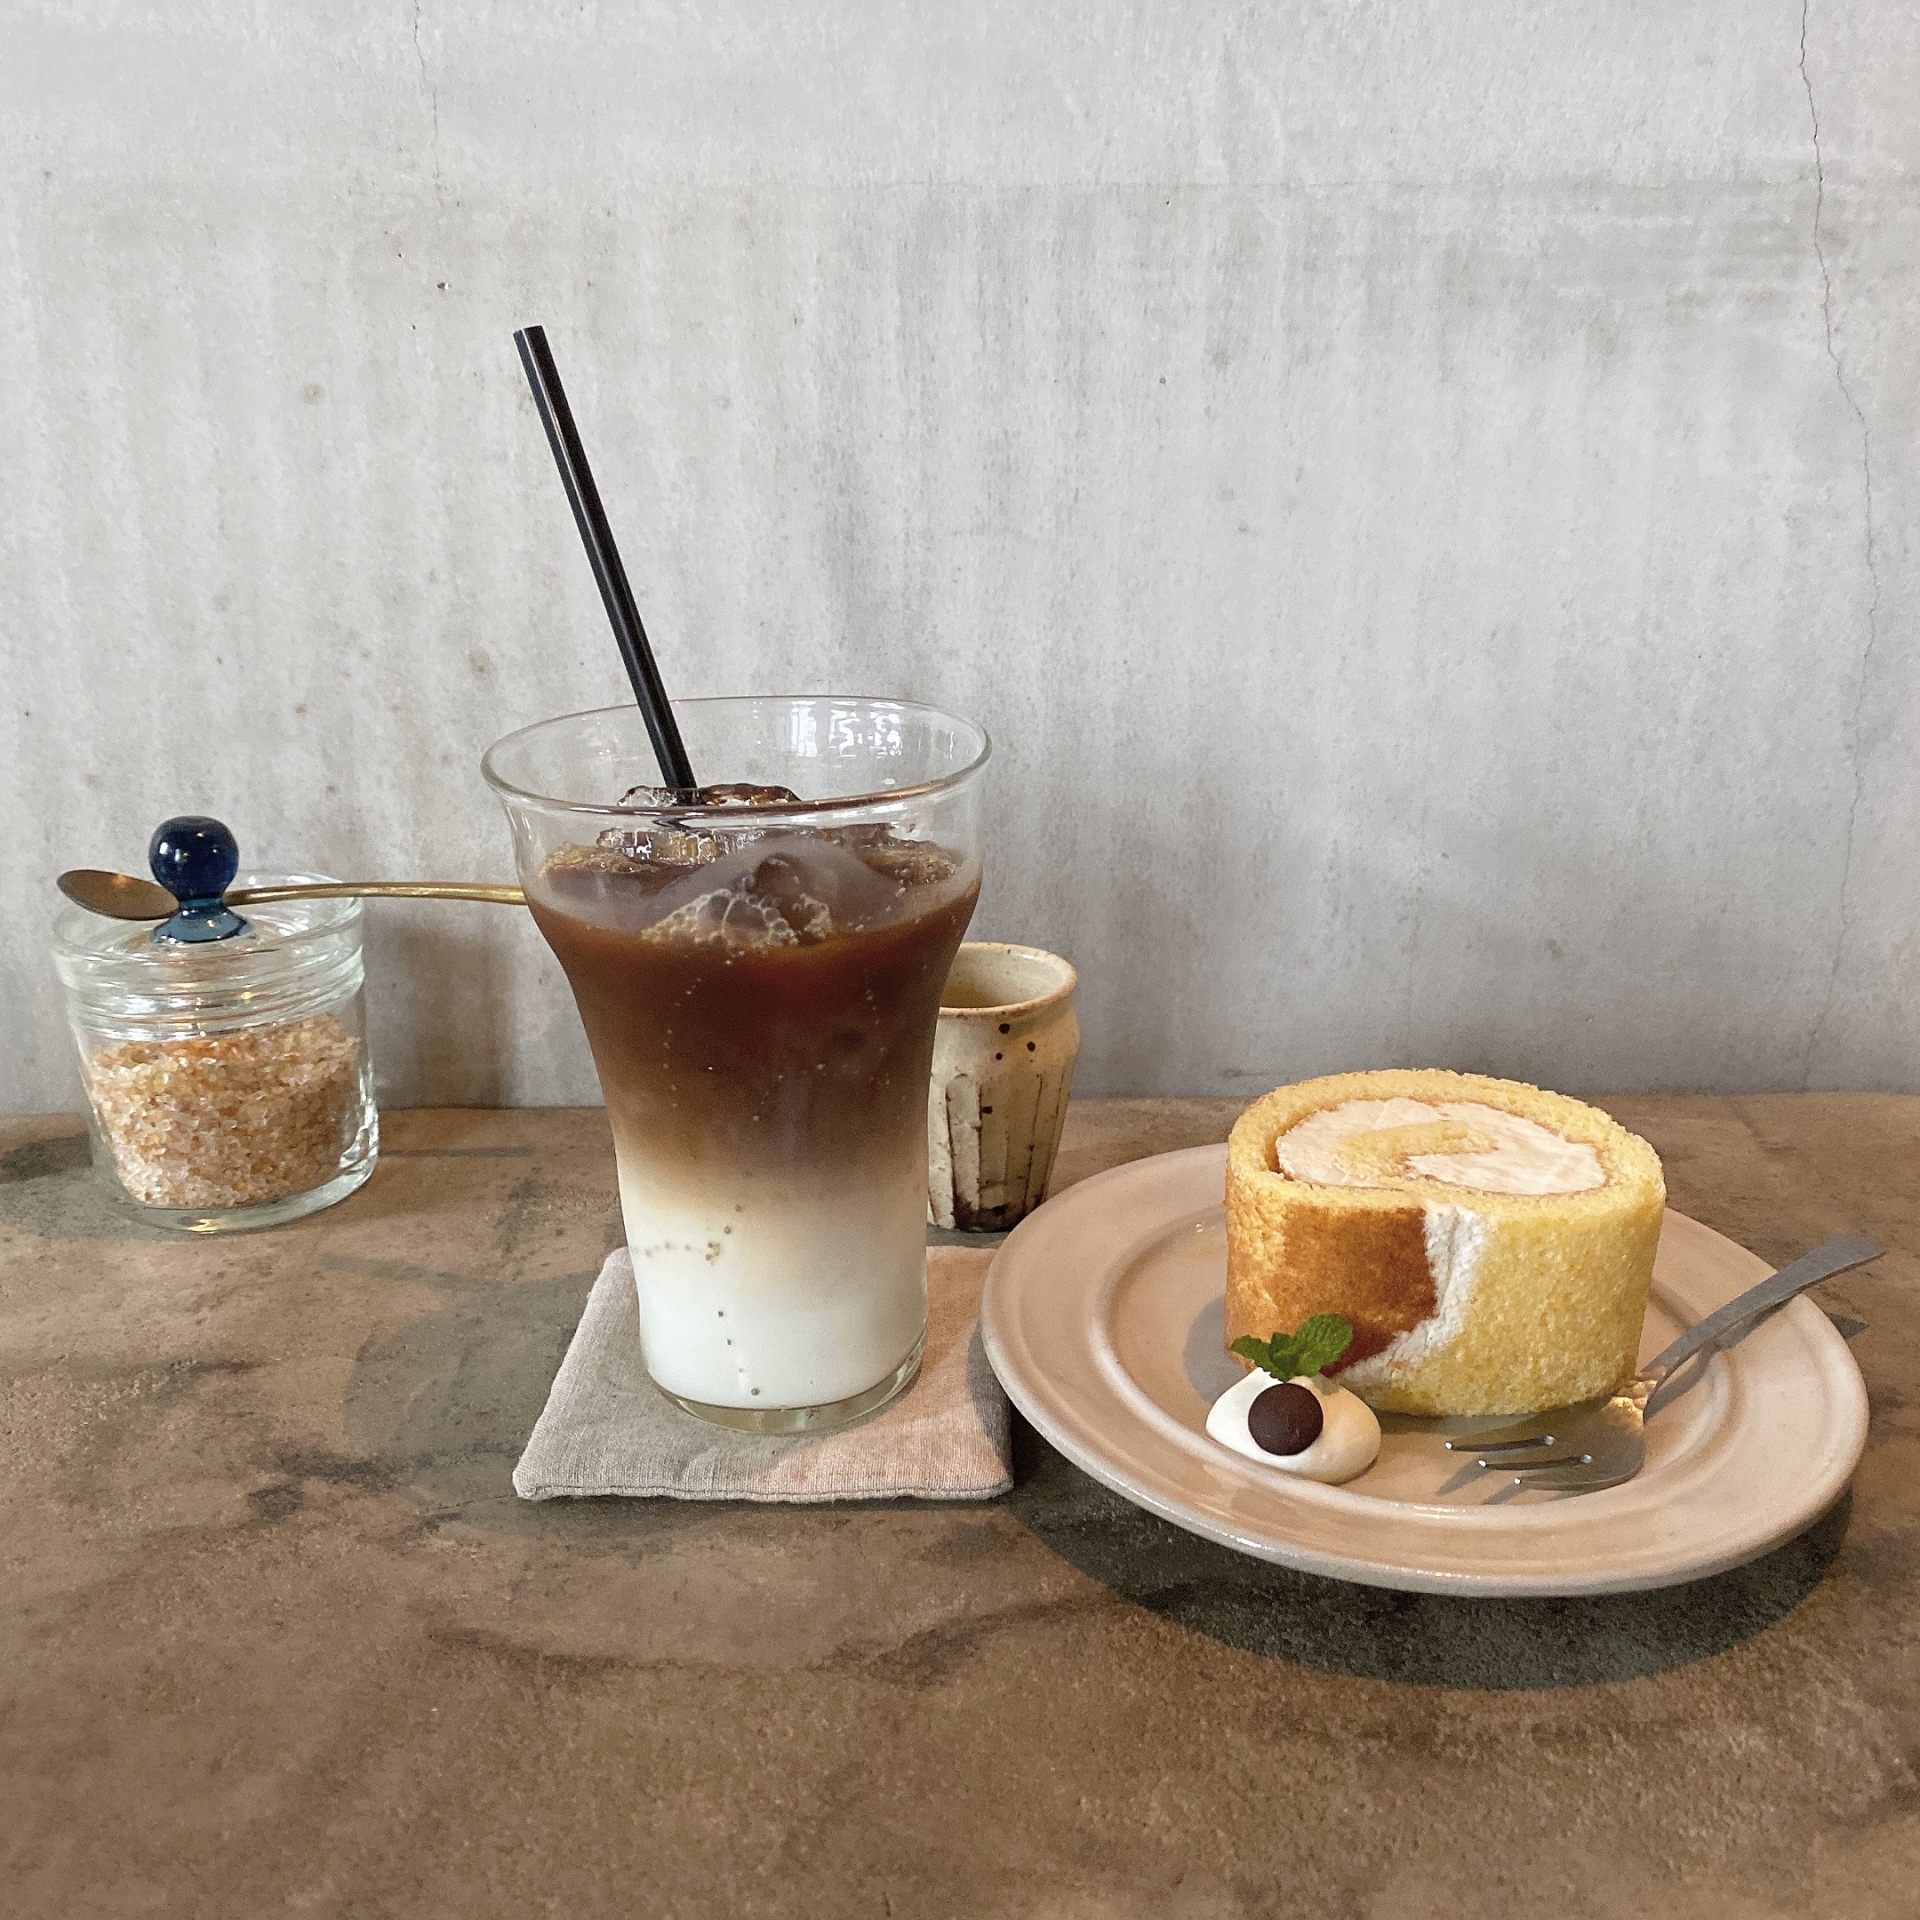 菓子屋シノノメのカフェ「喫茶半月」で素敵な時間を♡焼き菓子など人気商品も紹介